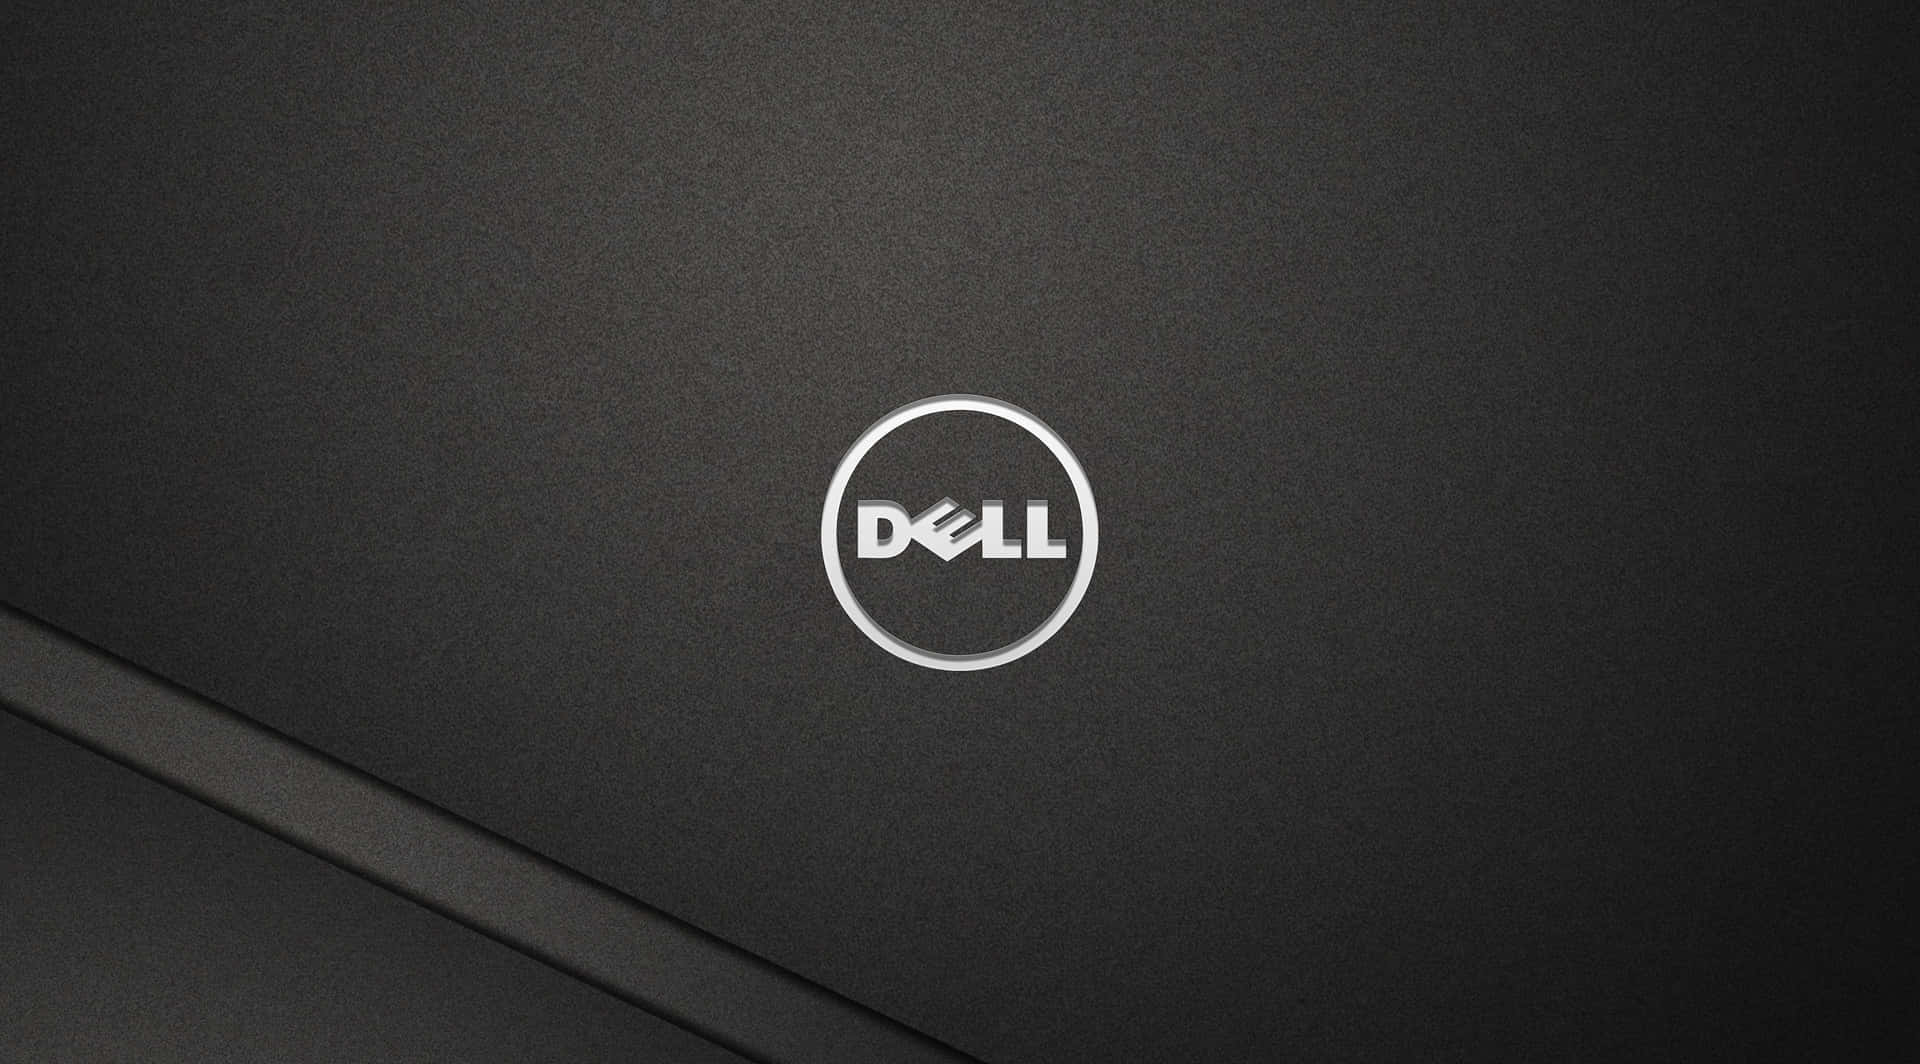 Dell,arbejder Mod Teknologisk Fremragenhed.